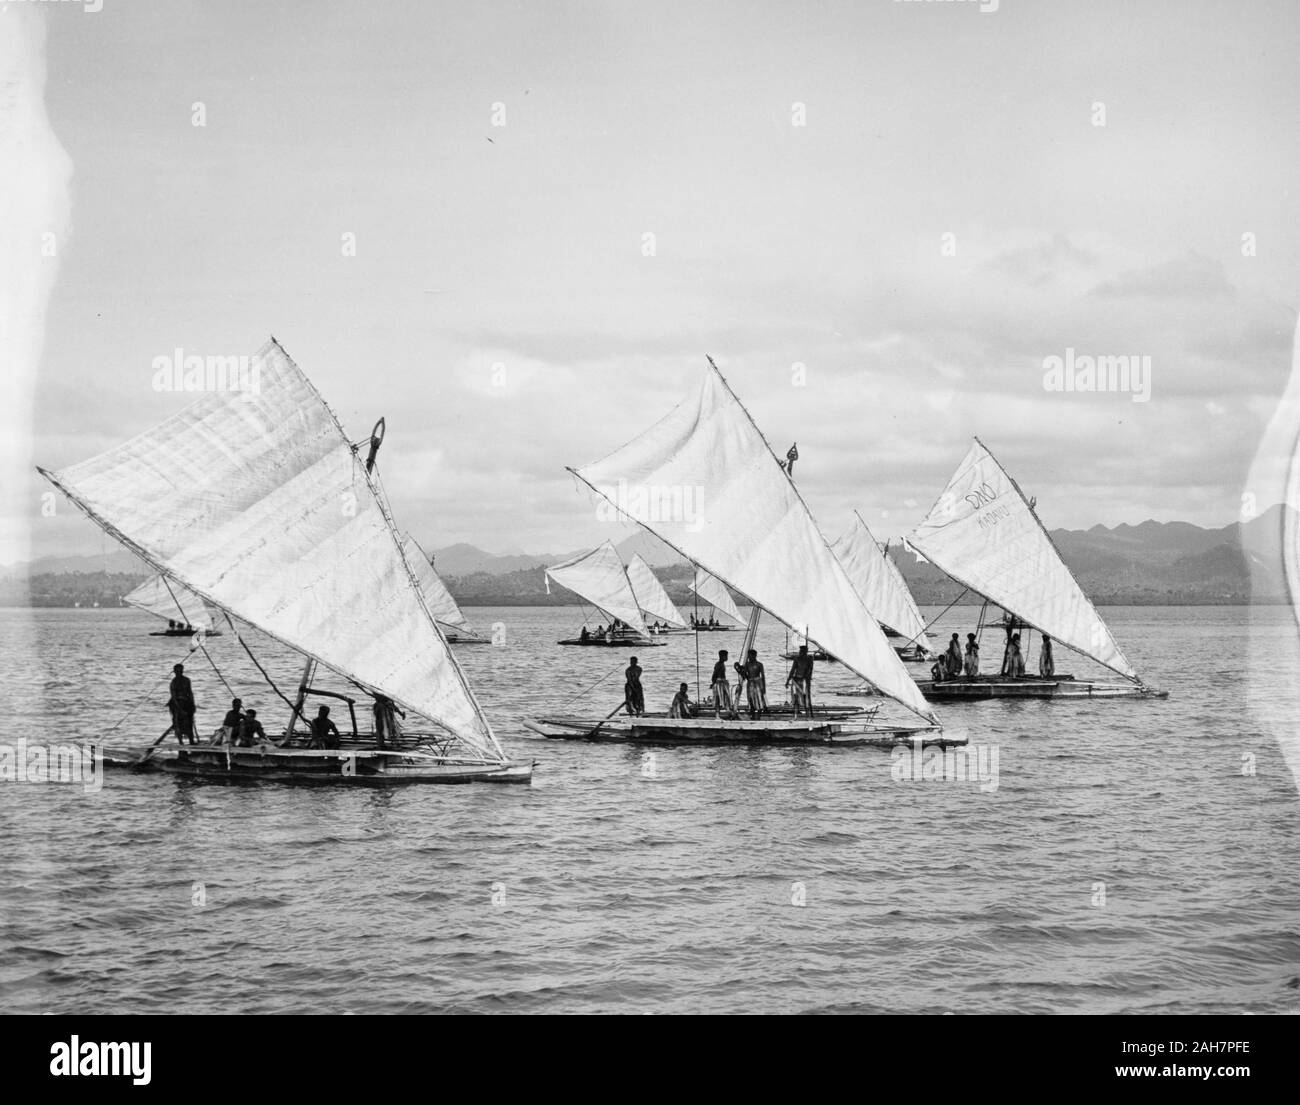 Fiji, Druas' frente a la costa de Fiji. Una flotilla de al menos diez  "Ruas" (en fijiano catamaranes) velas frente a la costa de Fiji. Título:  lecturas de canoas de Fiji están